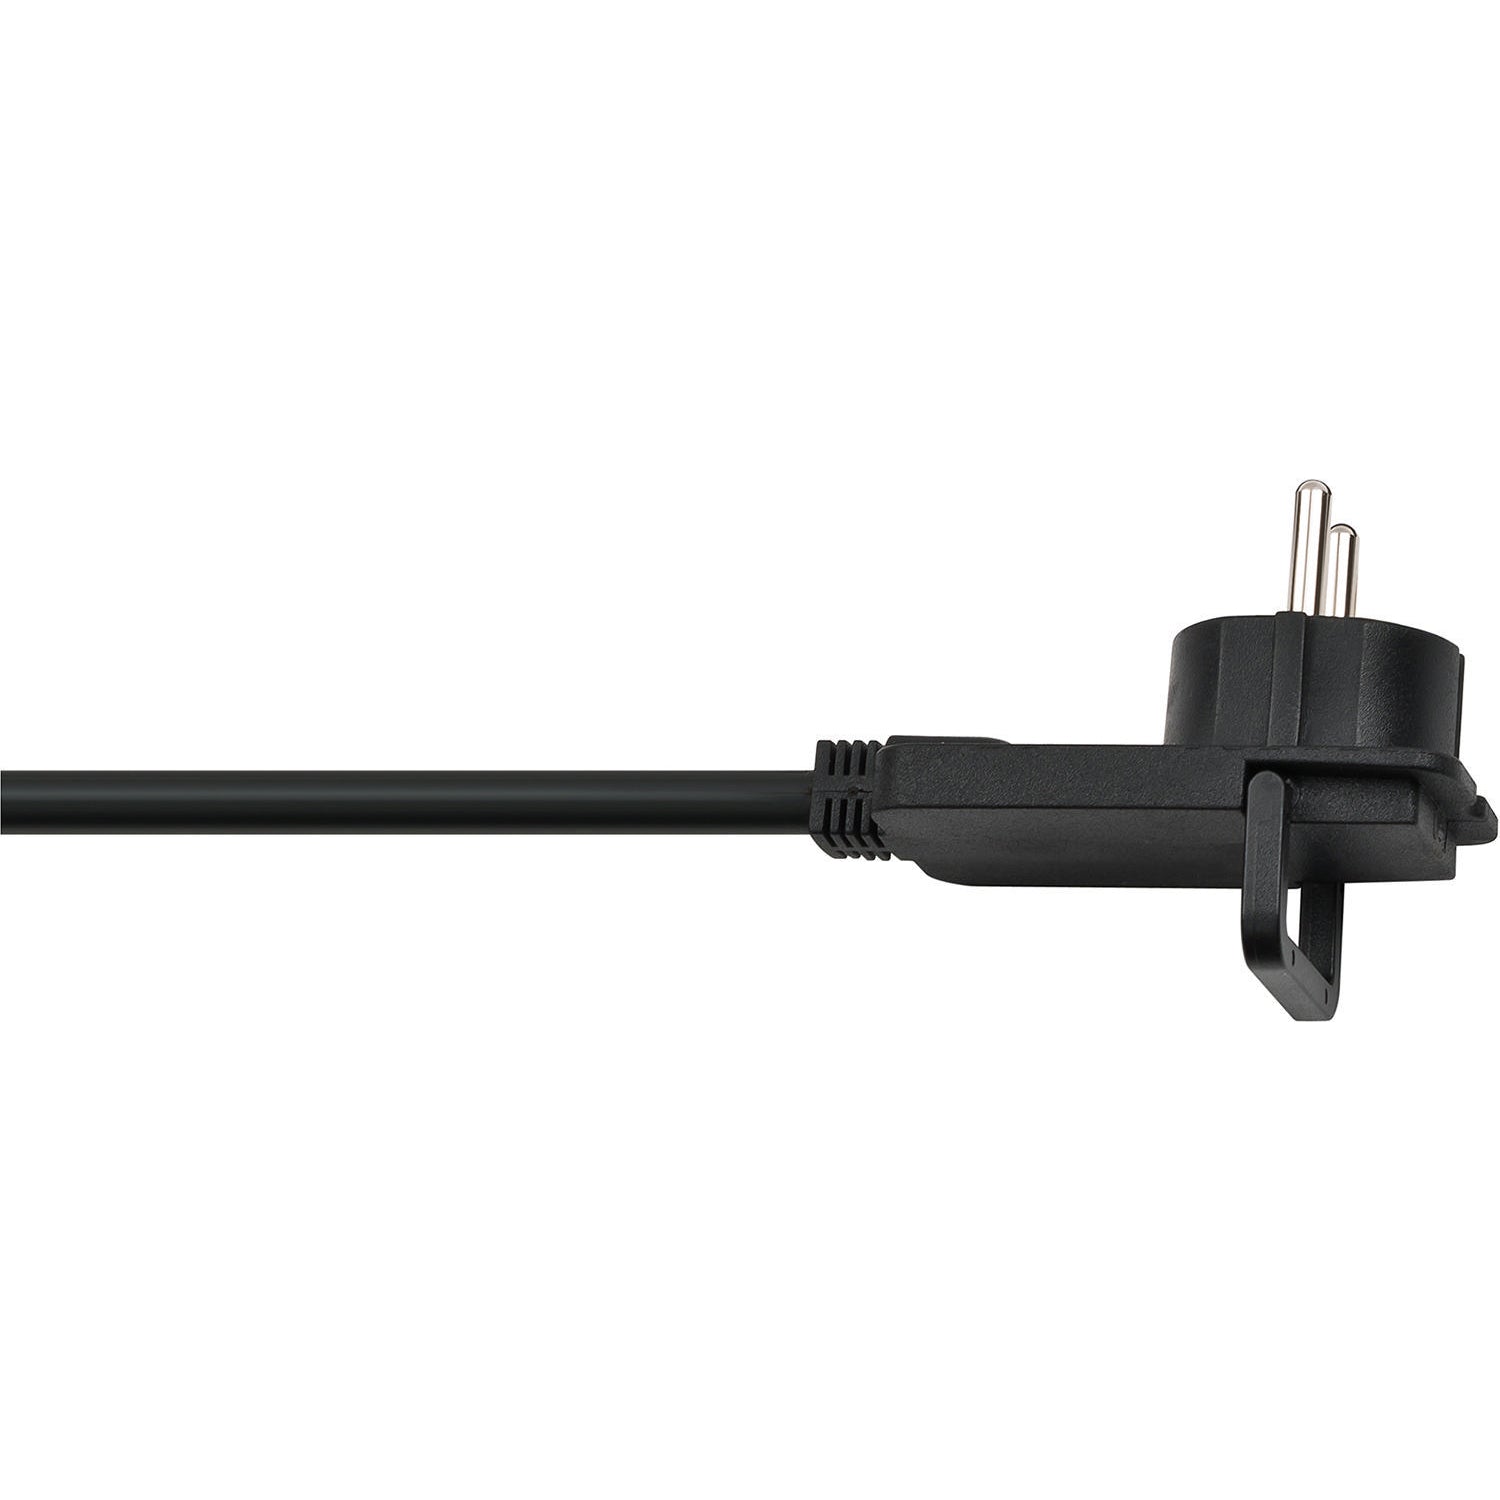 Comfort-Line Plus, Steckdosenleiste 6-fach (mit Flachstecker, Schalter, 2.00m Kabel und extra breite Abstände der Steckdosen) schwarz TYPE F